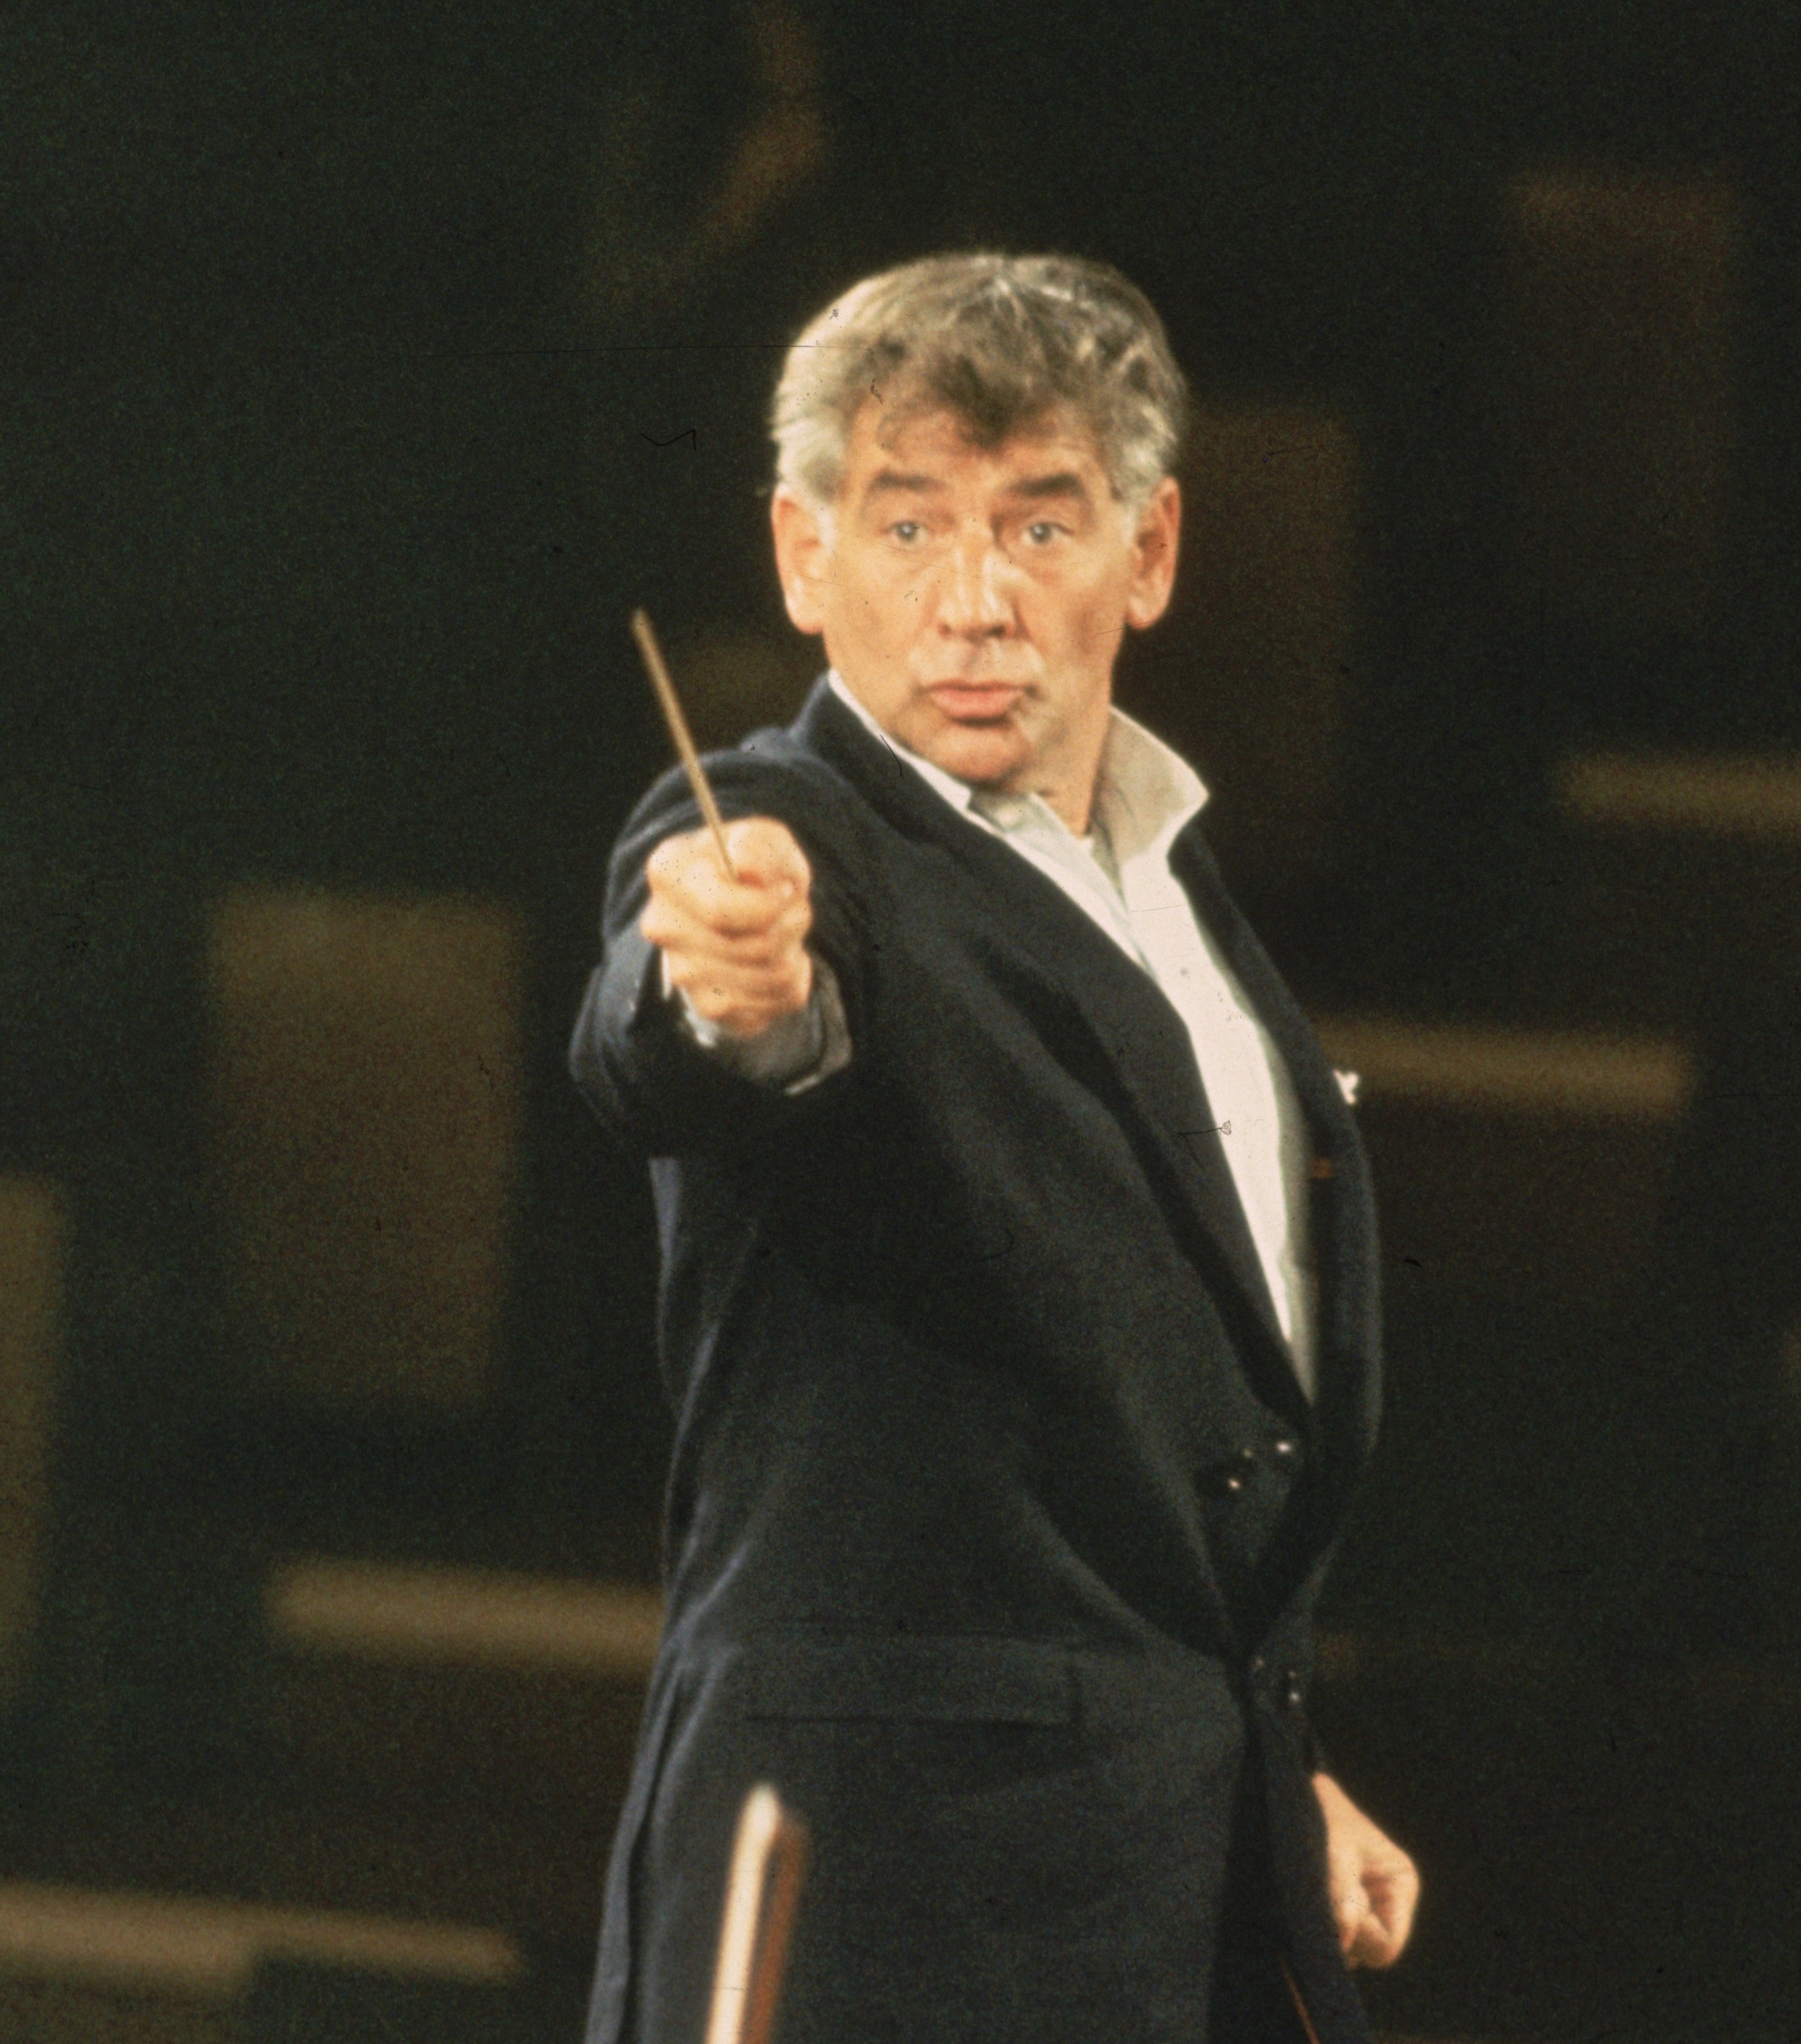 Leonard Bernstein conducting an orchestra